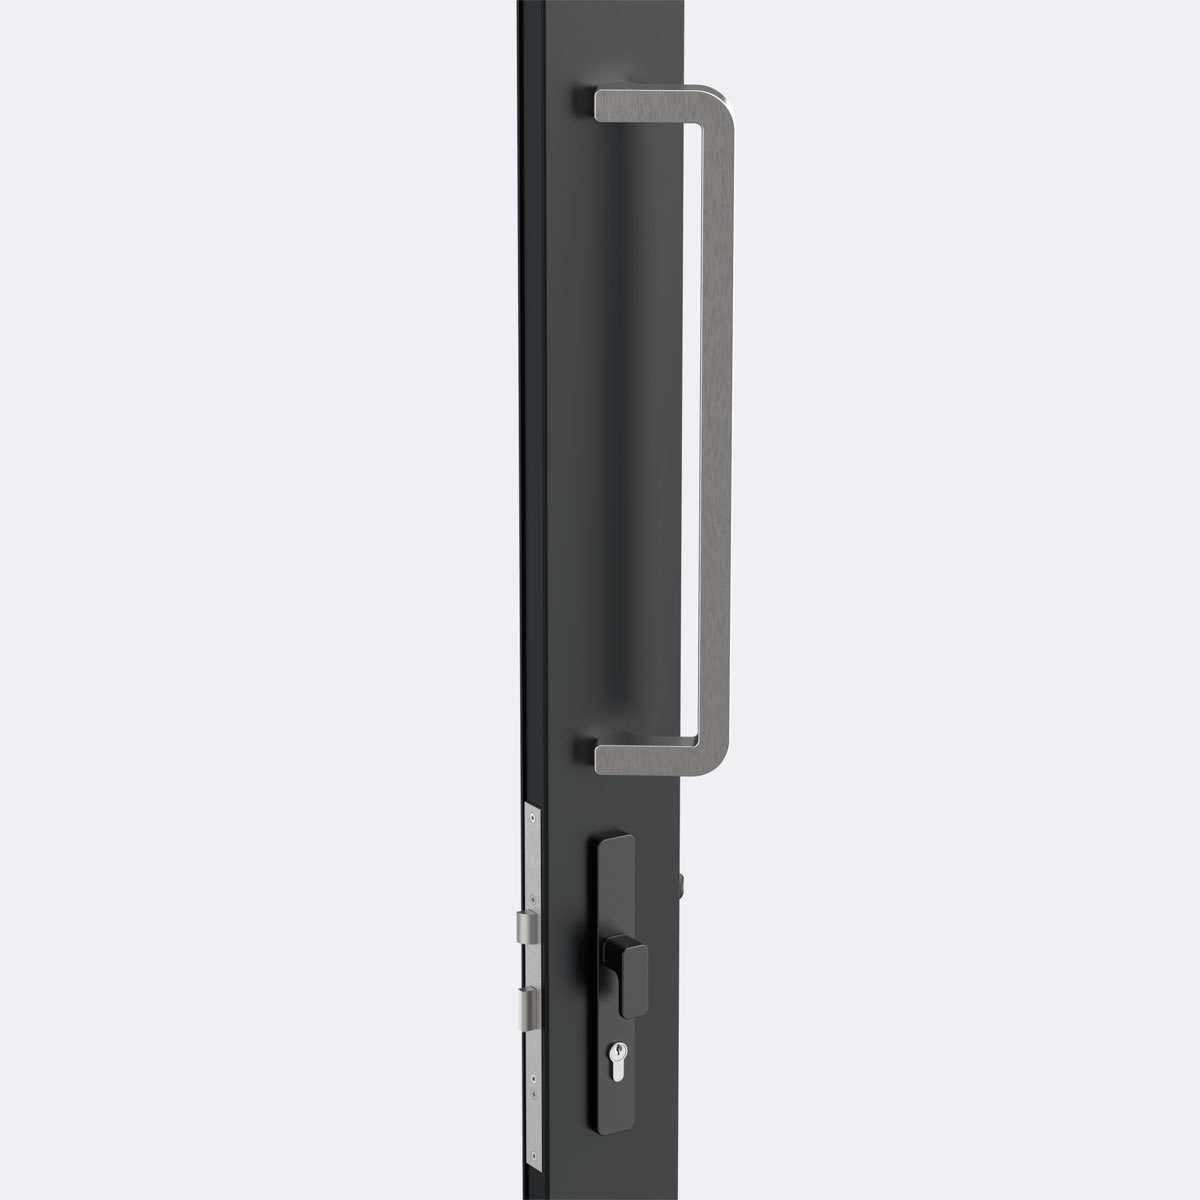 Architectural offset door handle